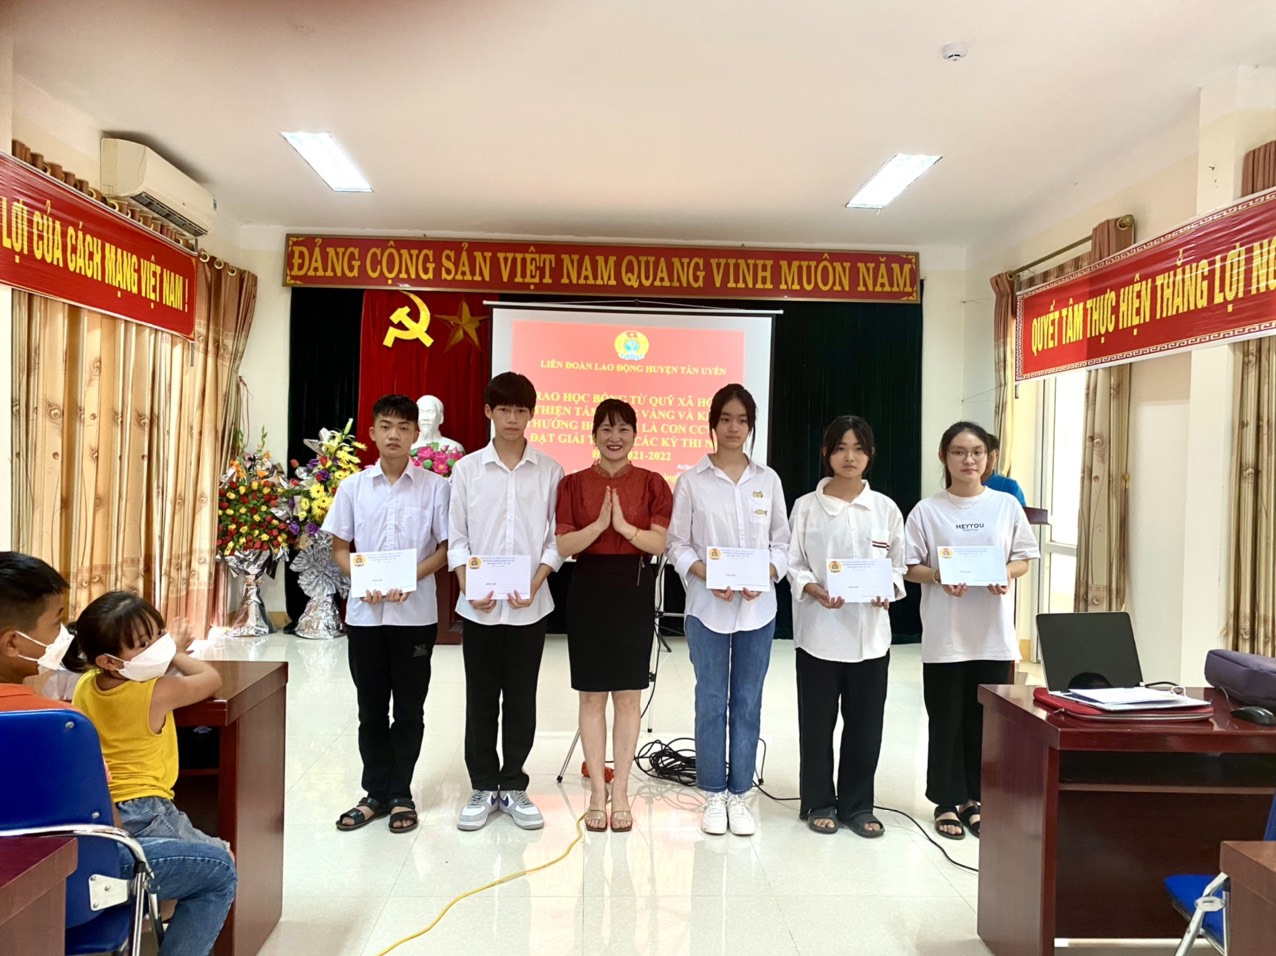 Đc Bùi Thị Minh Hải Chủ tịch Liên đoàn lao động huyện Tân Uyên trao khen thưởng cho con đoàn viên công đoàn đạt giải trong các kỳ thi học sinh giỏi cấp Quốc gia, cấp tỉnh các môn học năm học 2021 2022